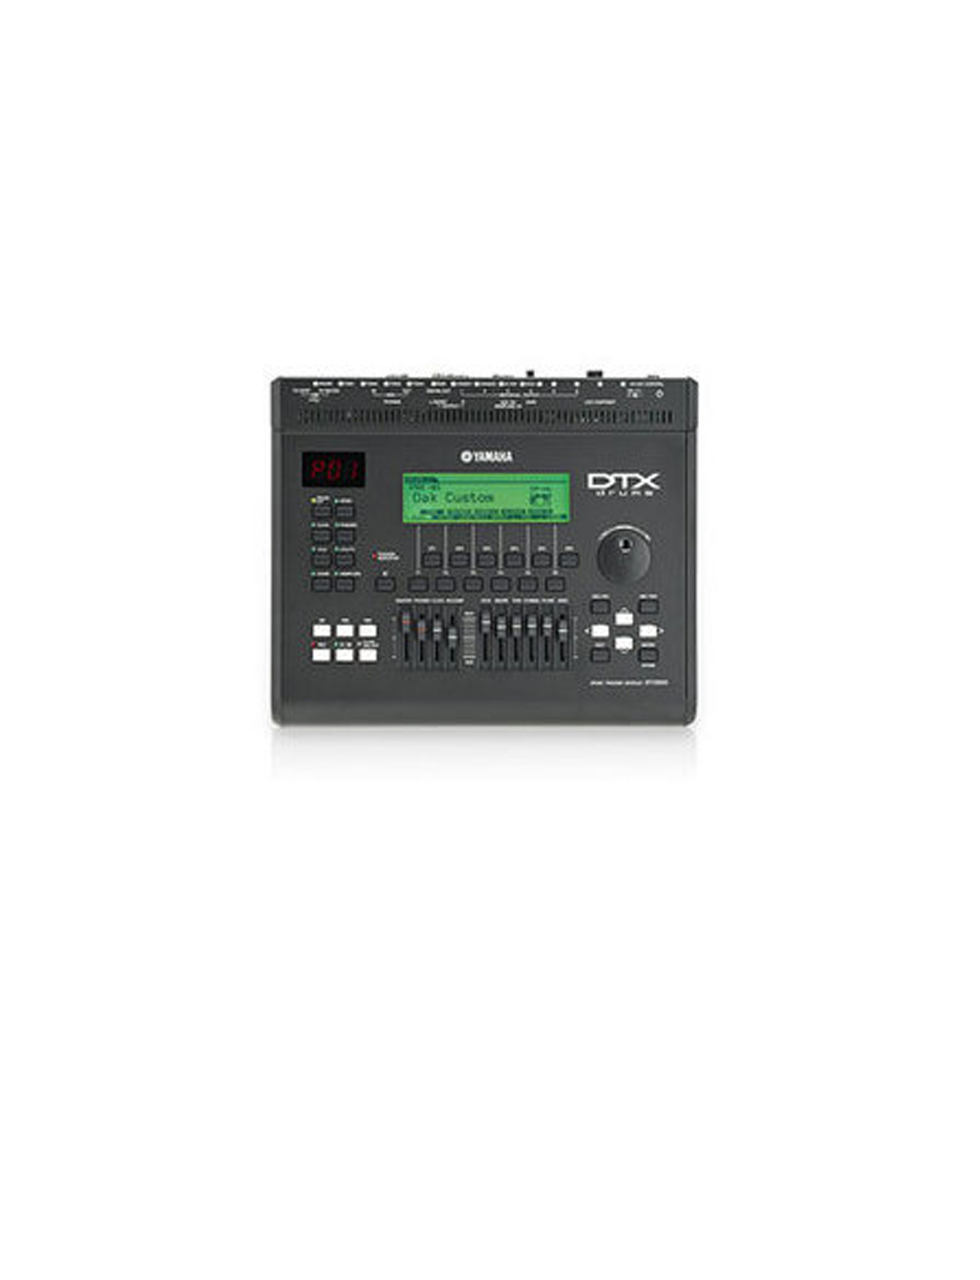 Yamaha-DTX950K-Electronik-Drum-Set-11011_12008_1.png